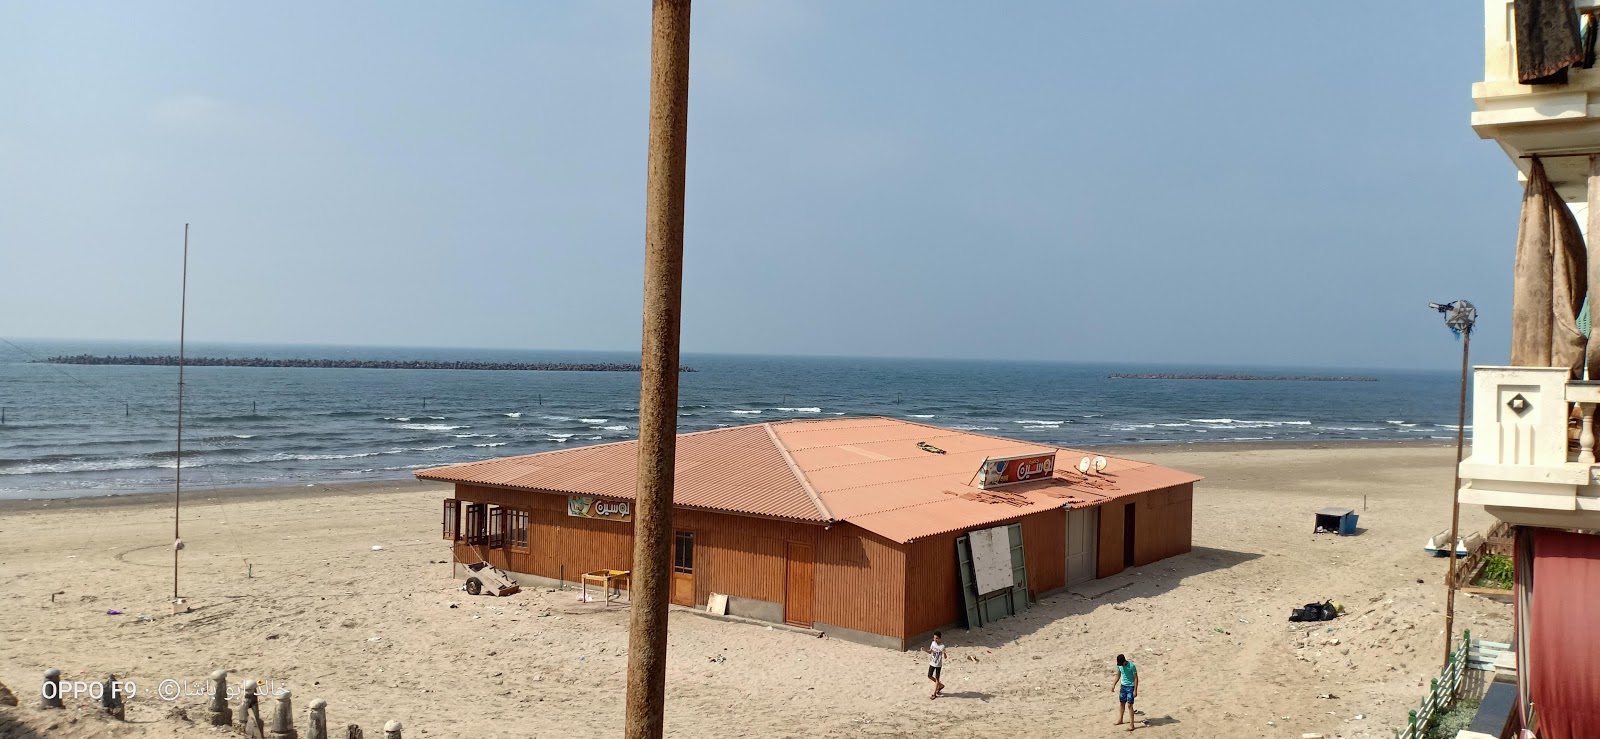 Ras El-Bar Beach'in fotoğrafı - rahatlamayı sevenler arasında popüler bir yer